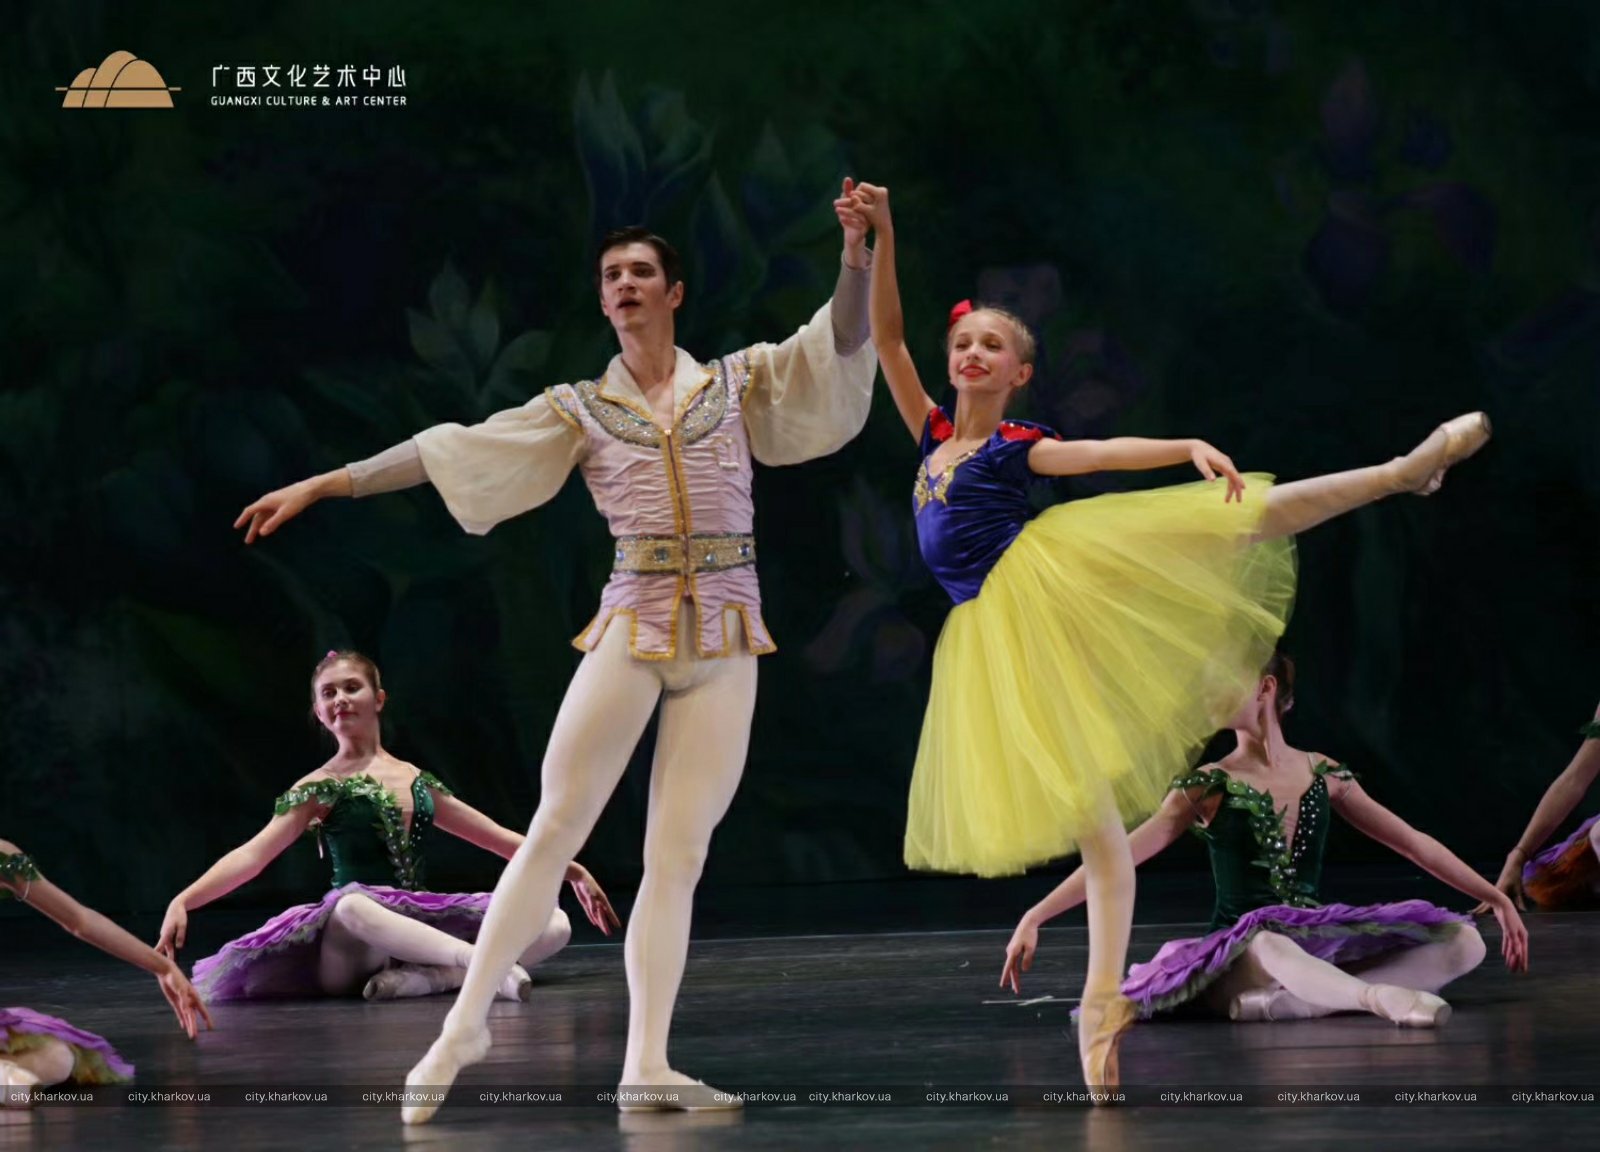 Харьковский балет дал спектакль в Пекине